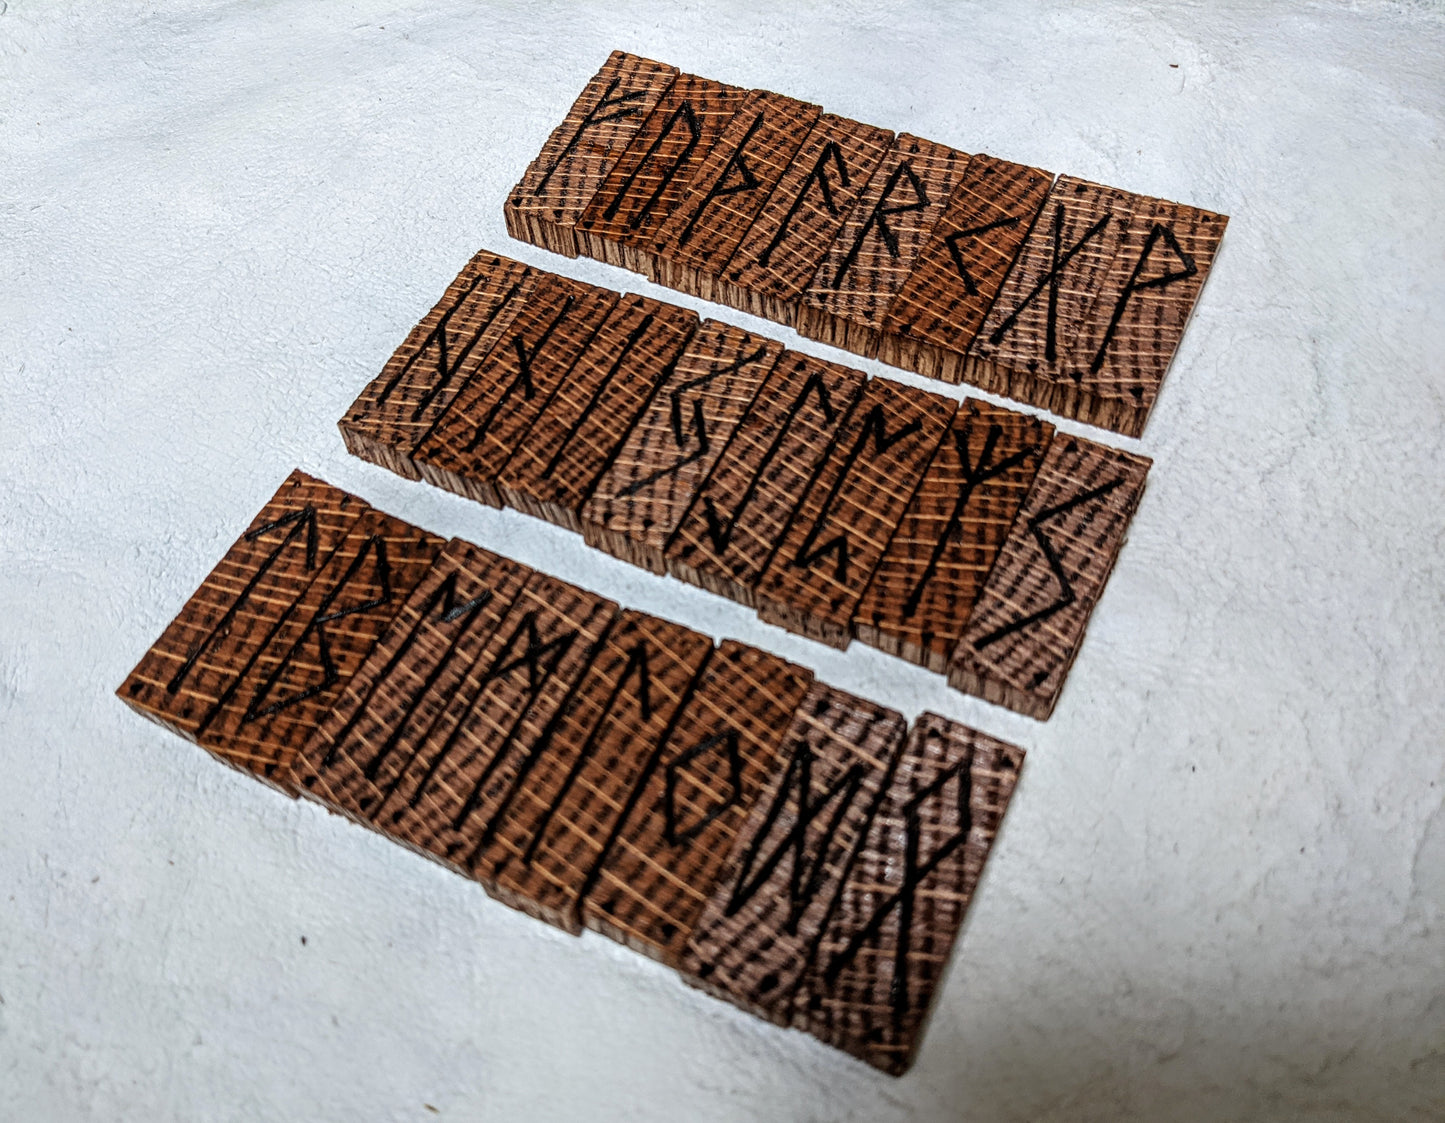 Red Oak Rune Sticks Jormungandr Sand Tray Nornir Blind Pull Rune Set